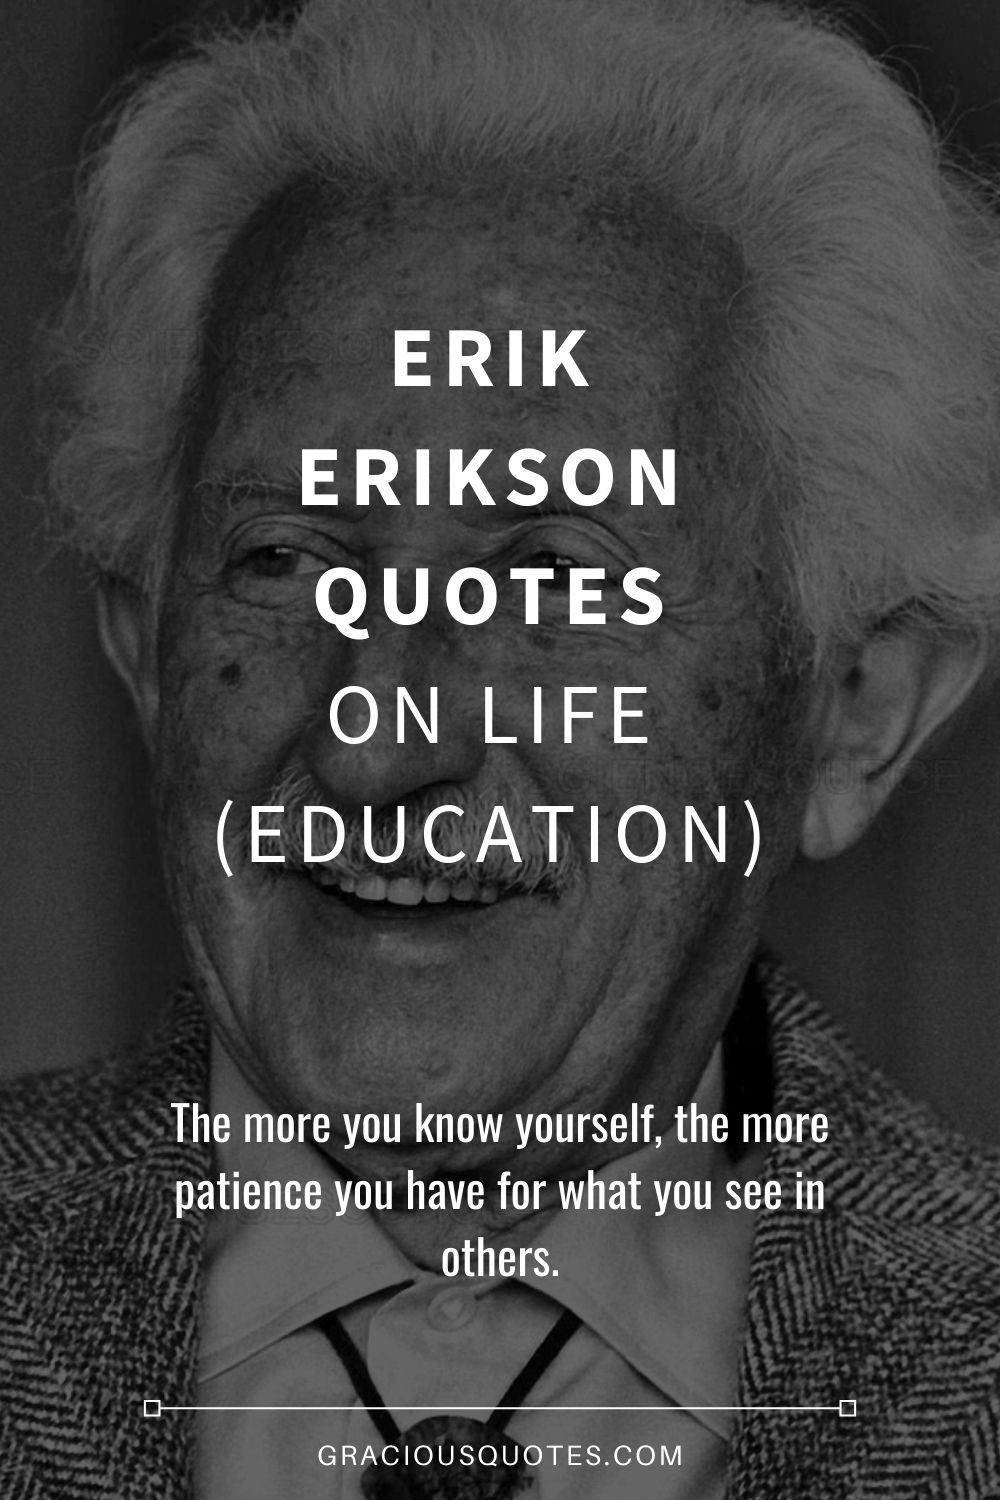 Erik Erikson Quotes on Life (EDUCATION) - Gracious Quotes